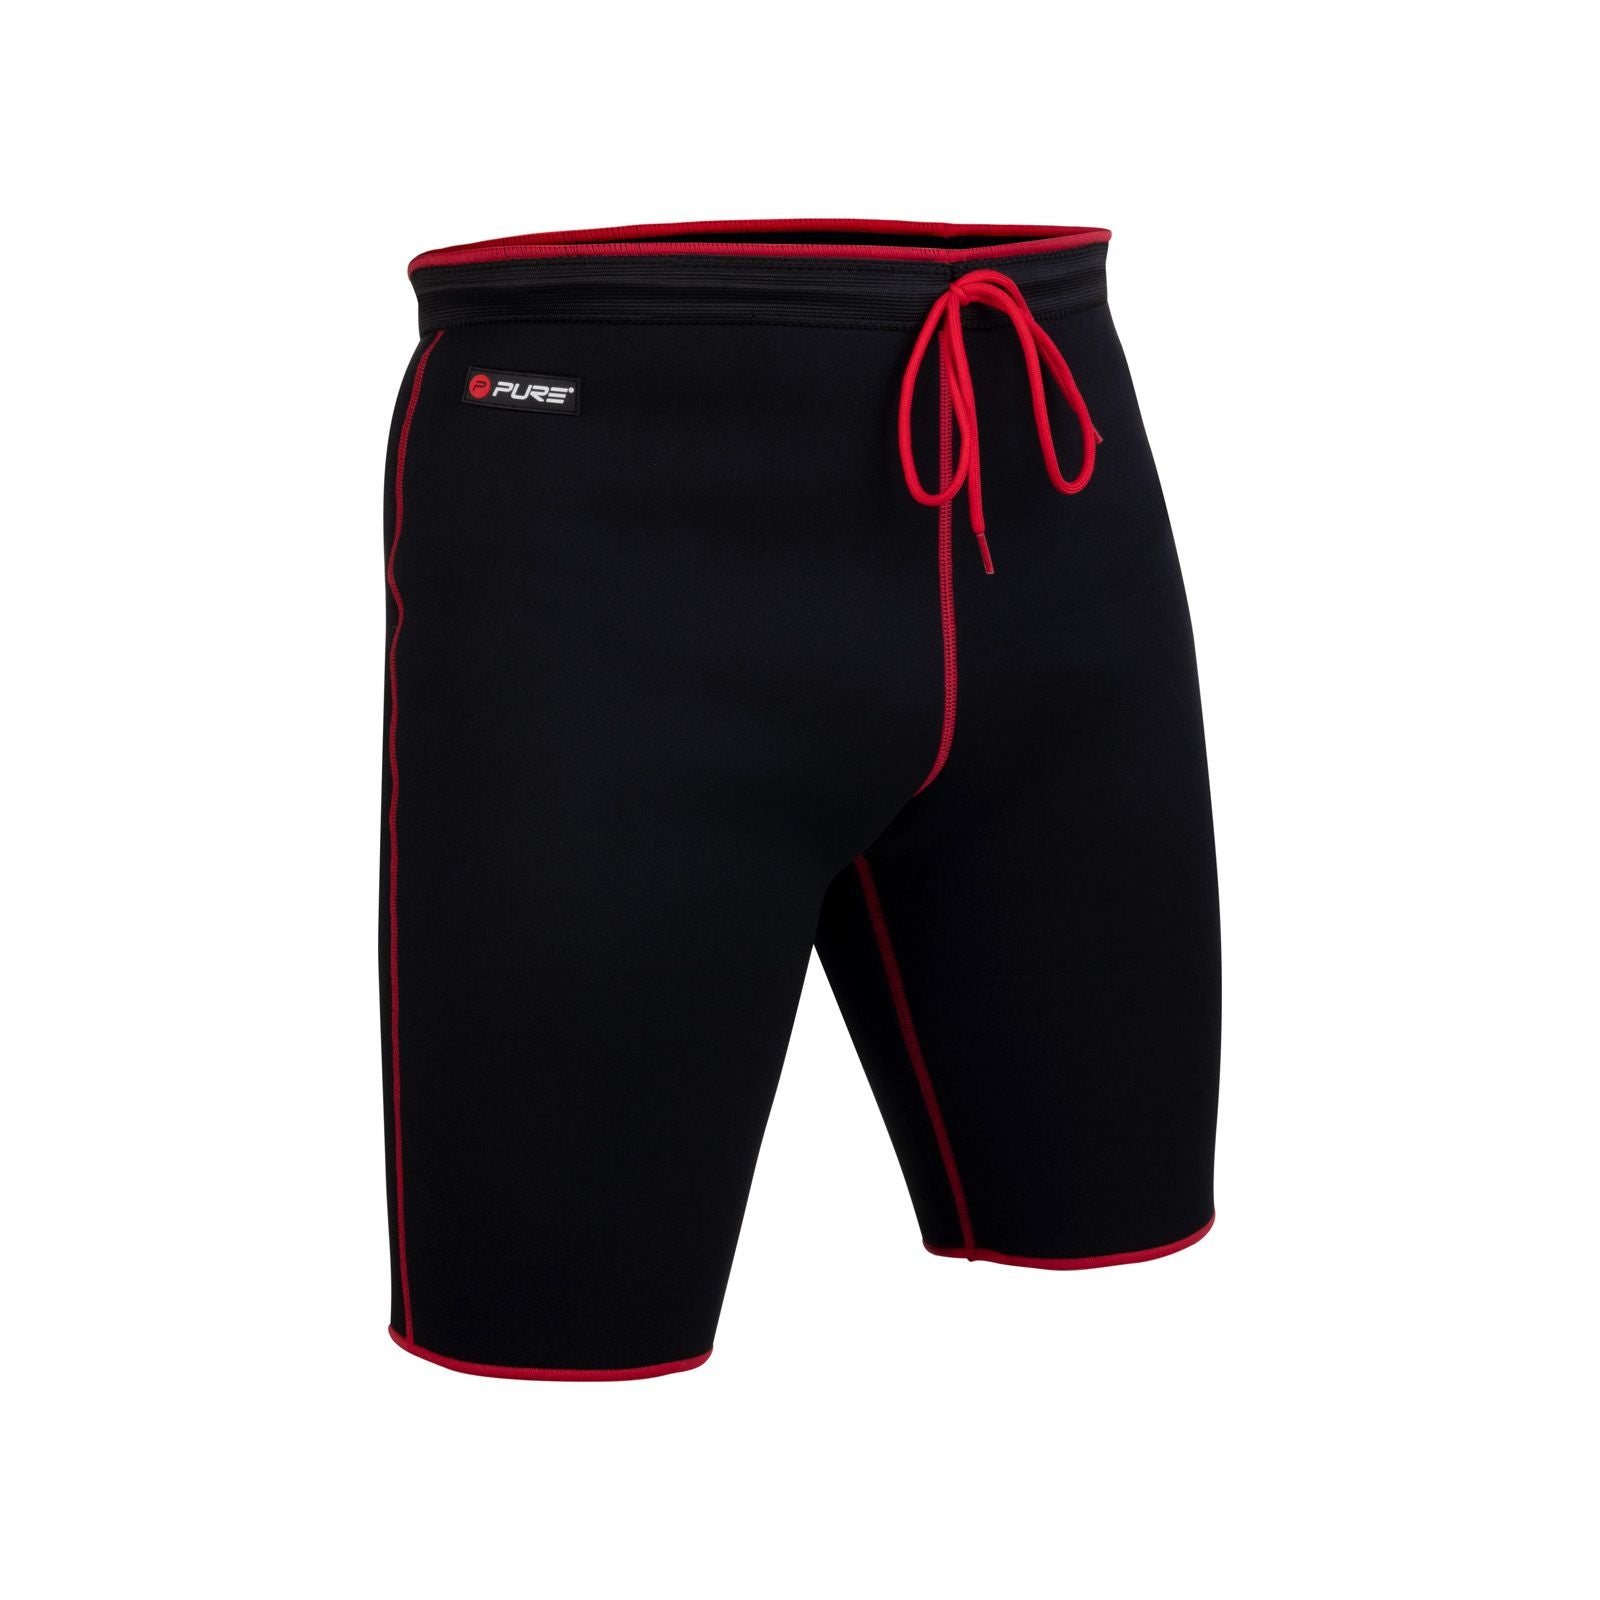 Immagine pantaloncini a compressione neri e rossi su sfondo bianco.